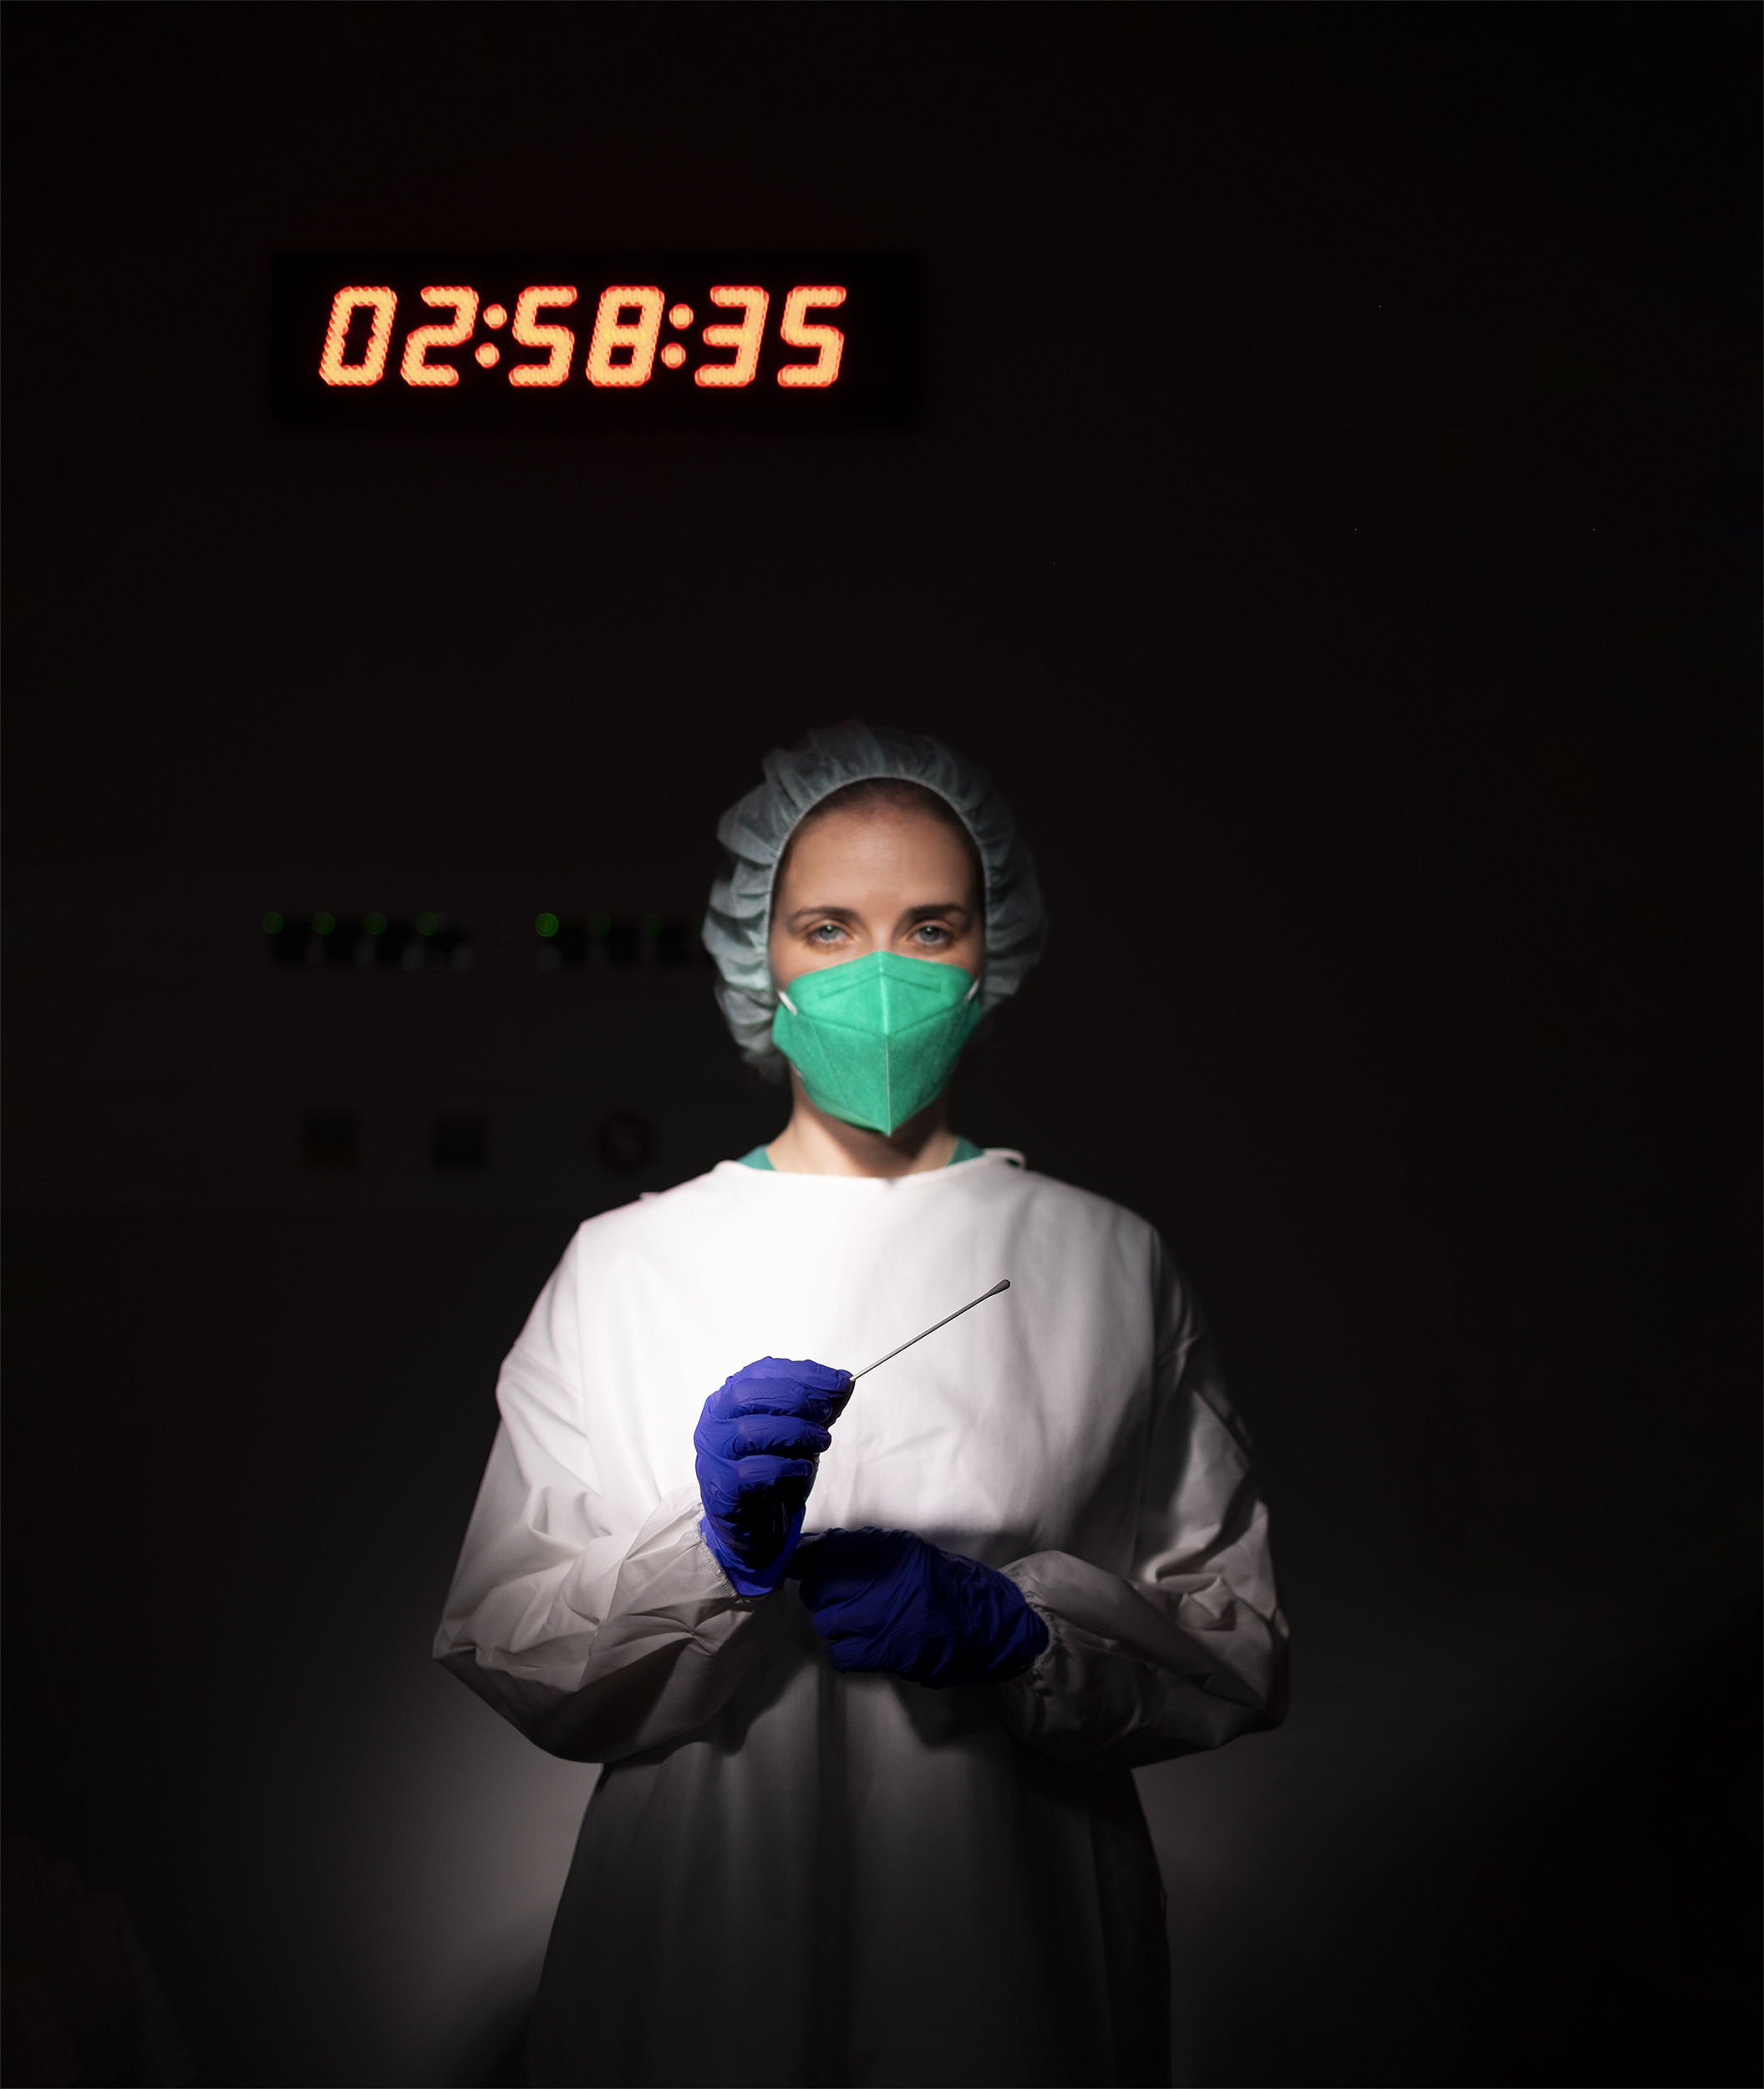 Enfermeira em ambiente escuro com face revelada, usa equipamento de proteção individual e segura zaragatoa com luvas.